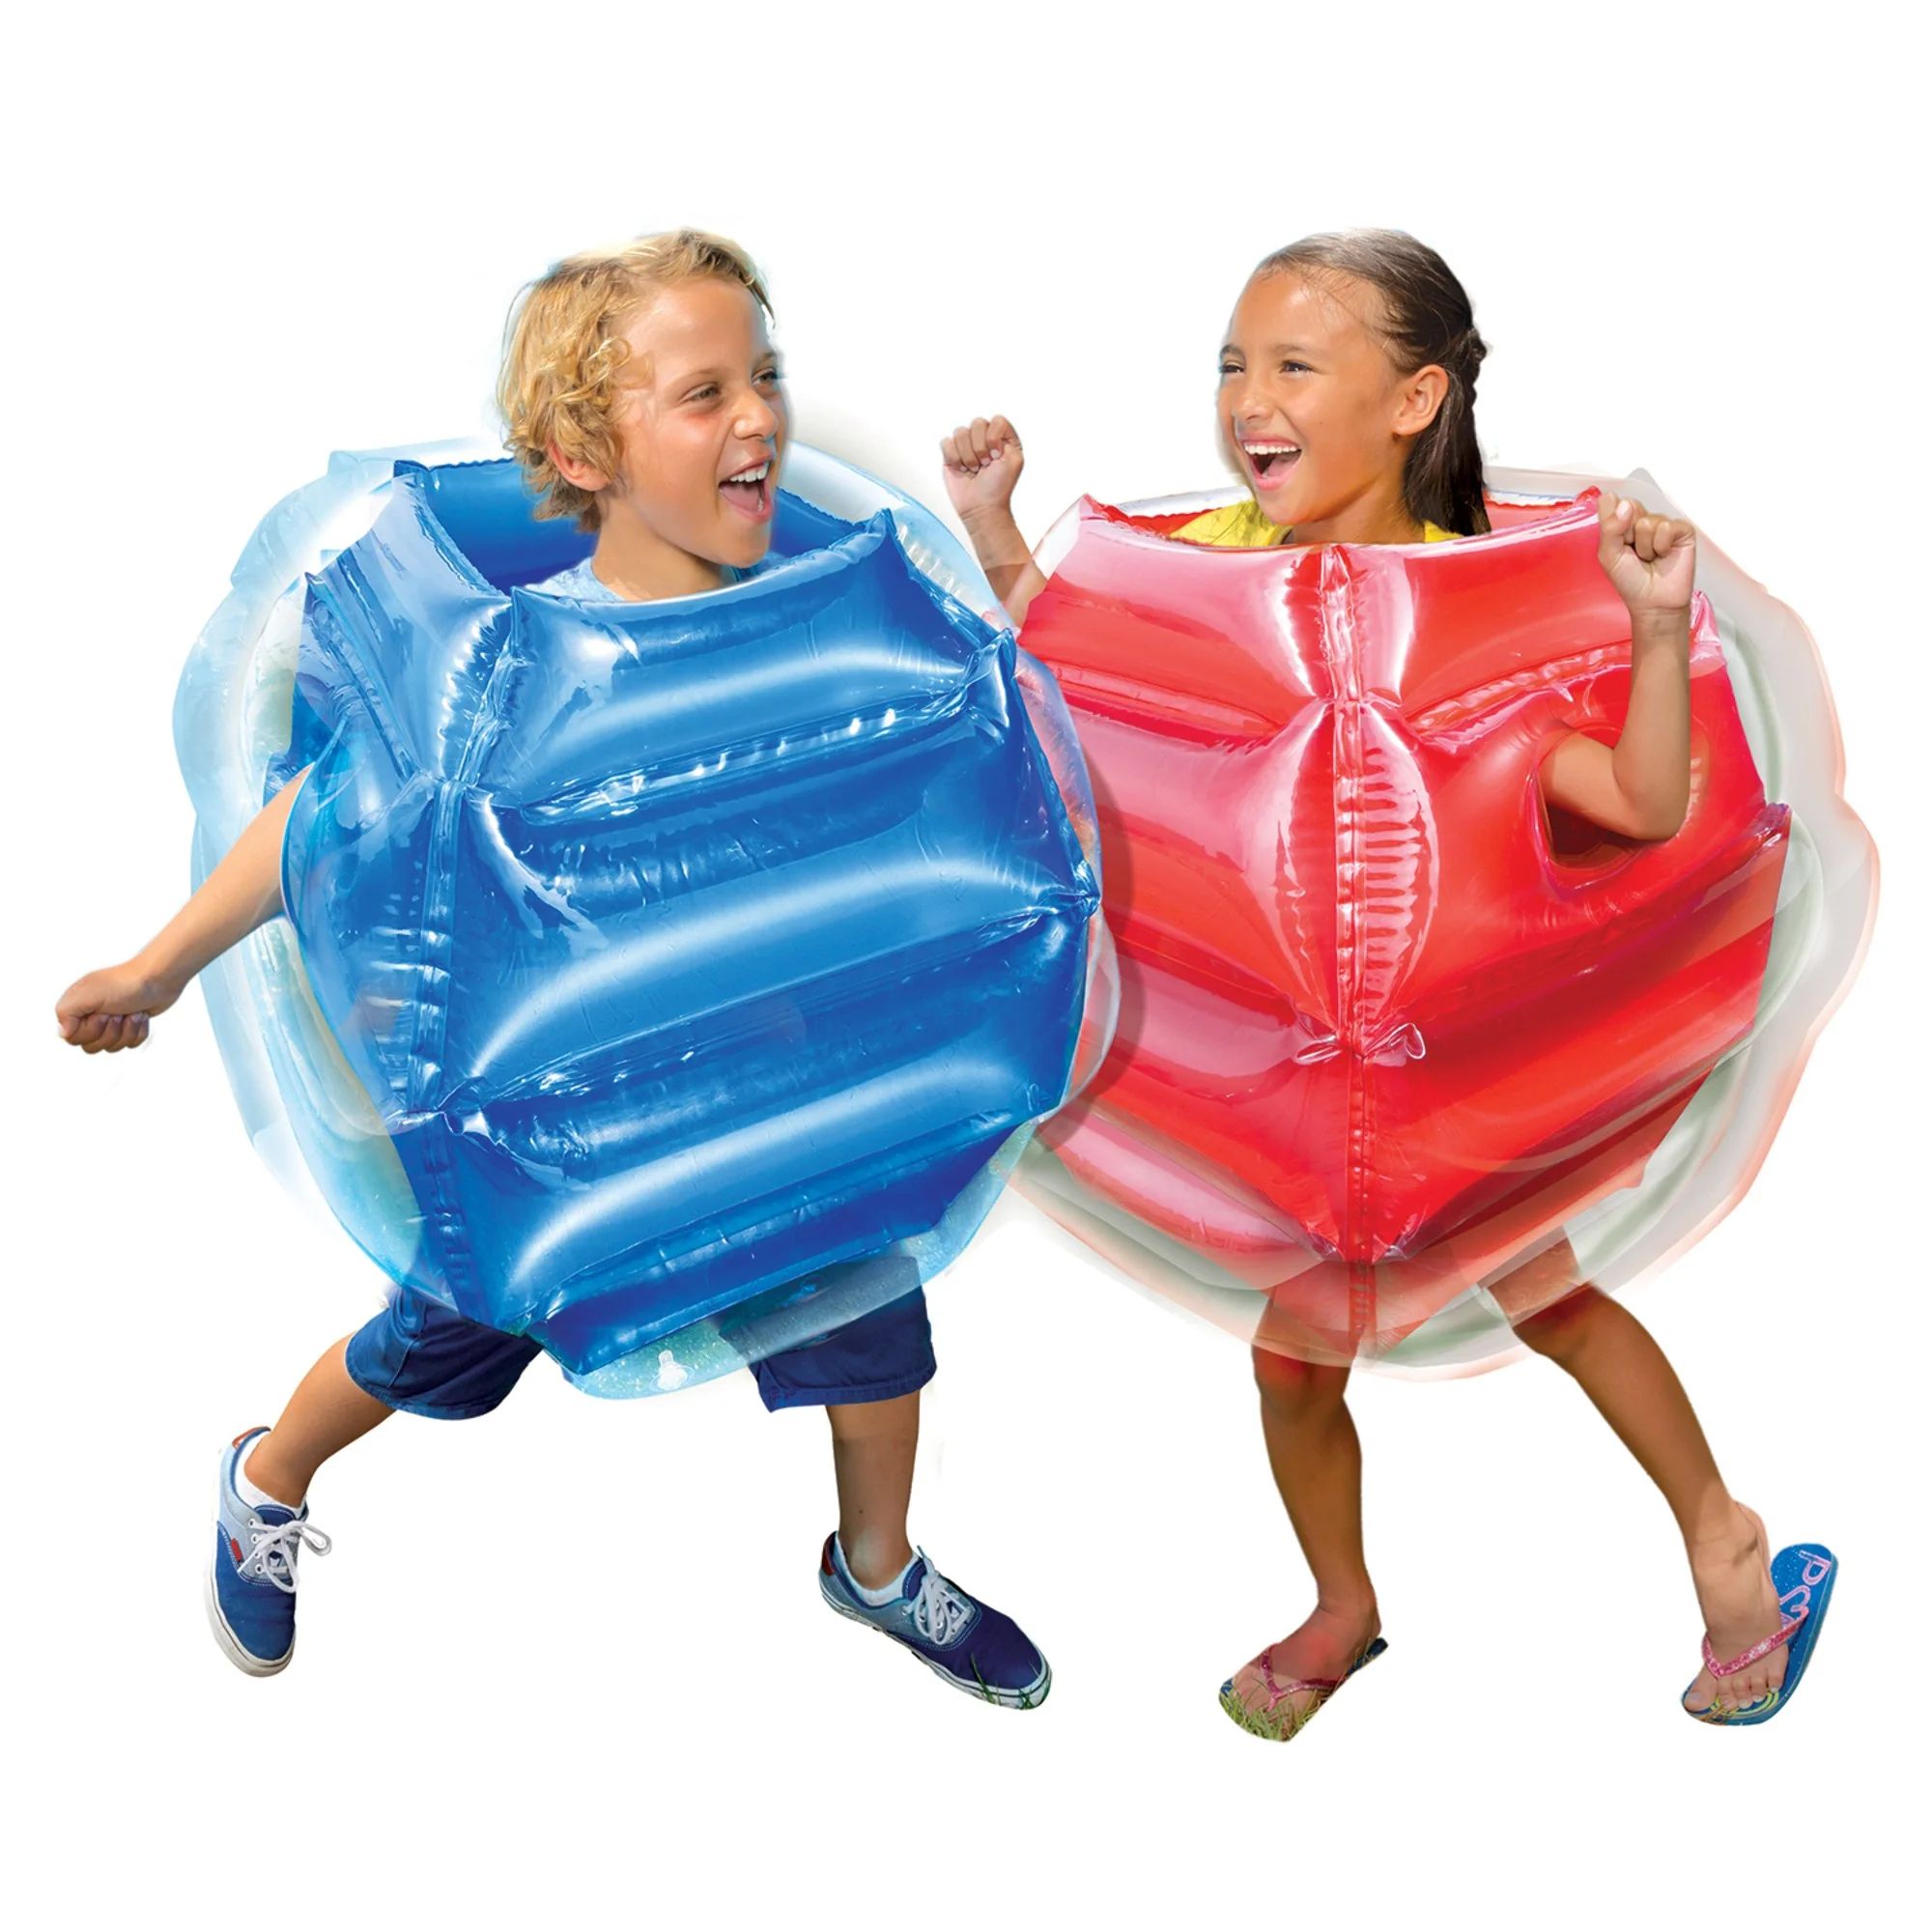 Banzai Bump N Bounce Body Bumpers in Red & Blue, 2 Bumpers - Bump & Bop Kids Toy - Walmart.com | Walmart (US)